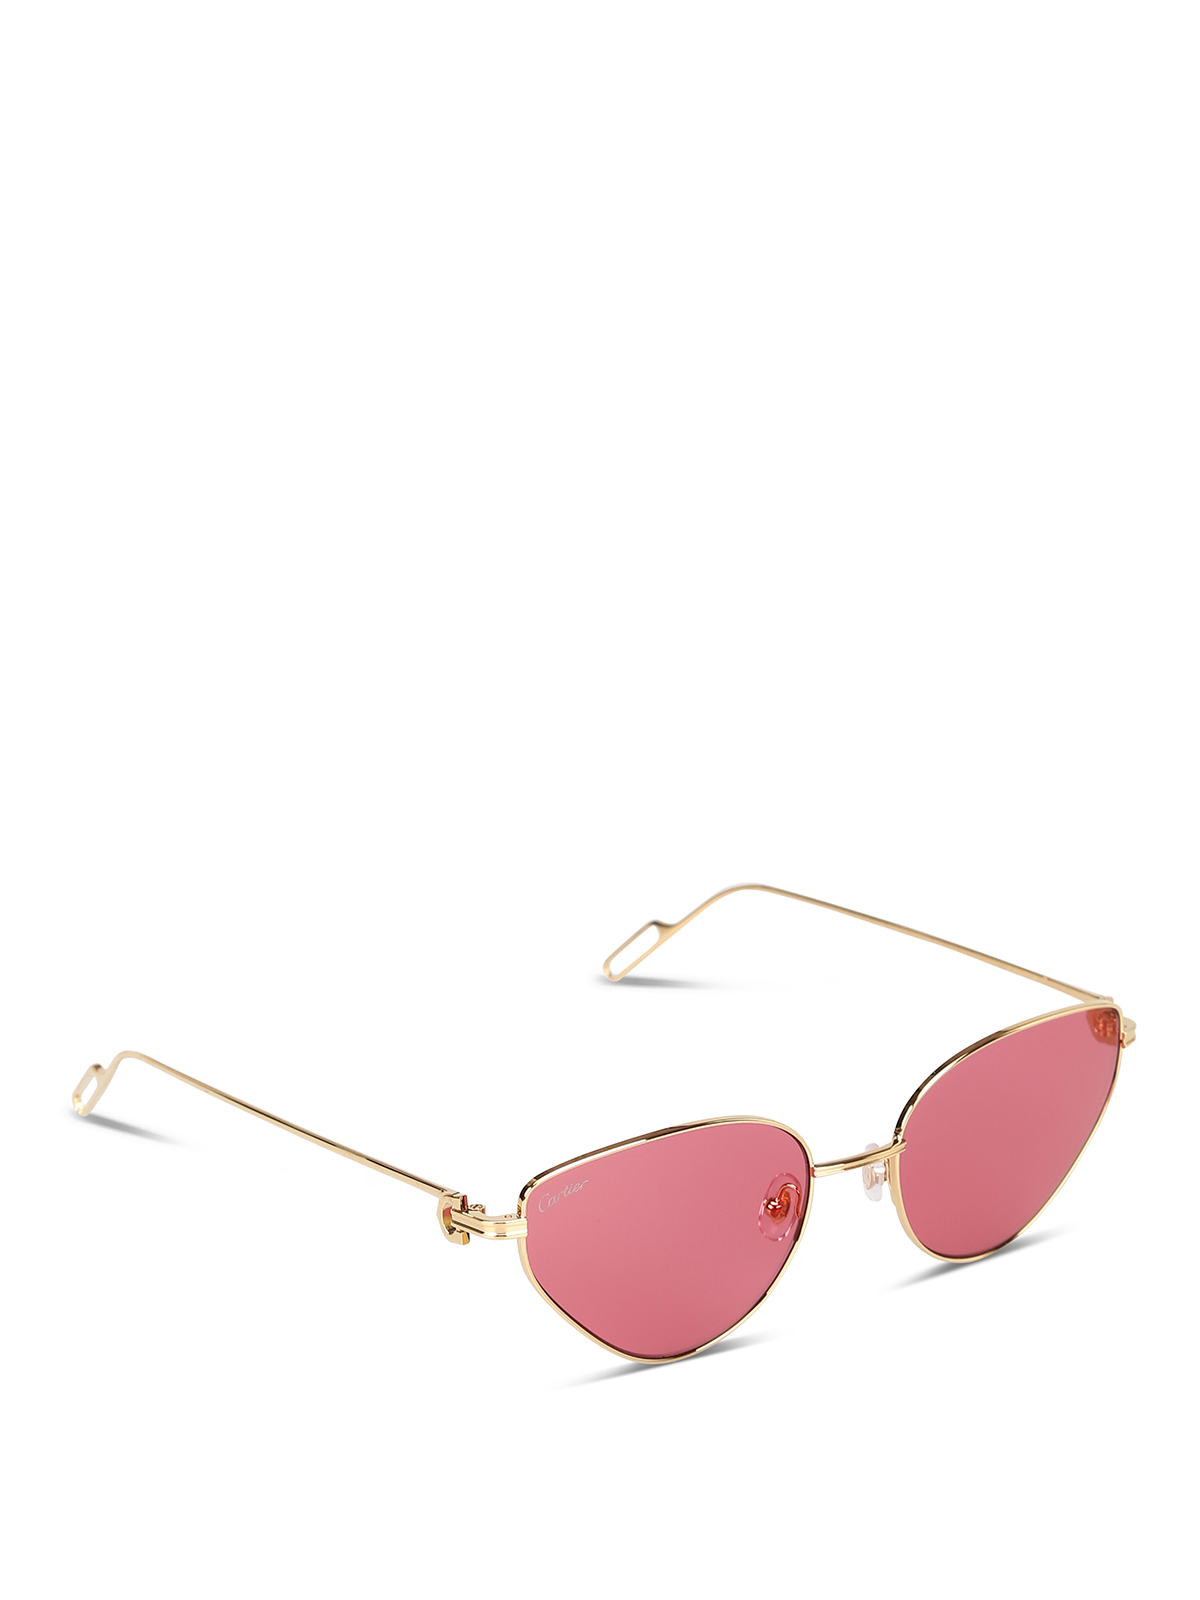 Sada Rareza dinosaurio Sunglasses Cartier - Gold-tone sunglasses with pink lenses - CT0155S003